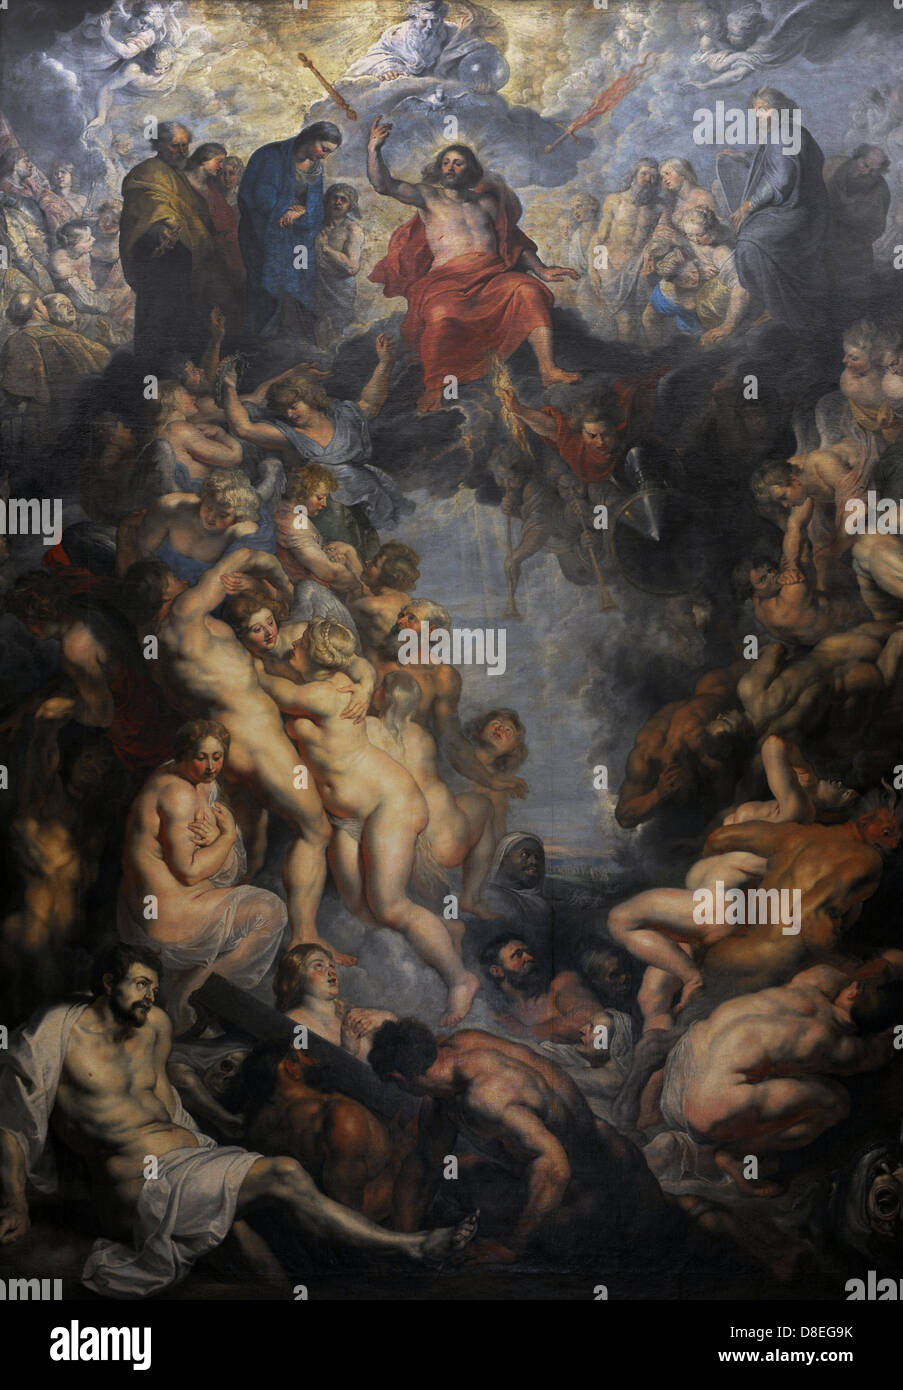 Rubens (1577-1640). Deutsch-stämmige flämischen Barock Maler. Das jüngste Gericht, 1615. Alte Pinakothek. München. Deutschland. Stockfoto